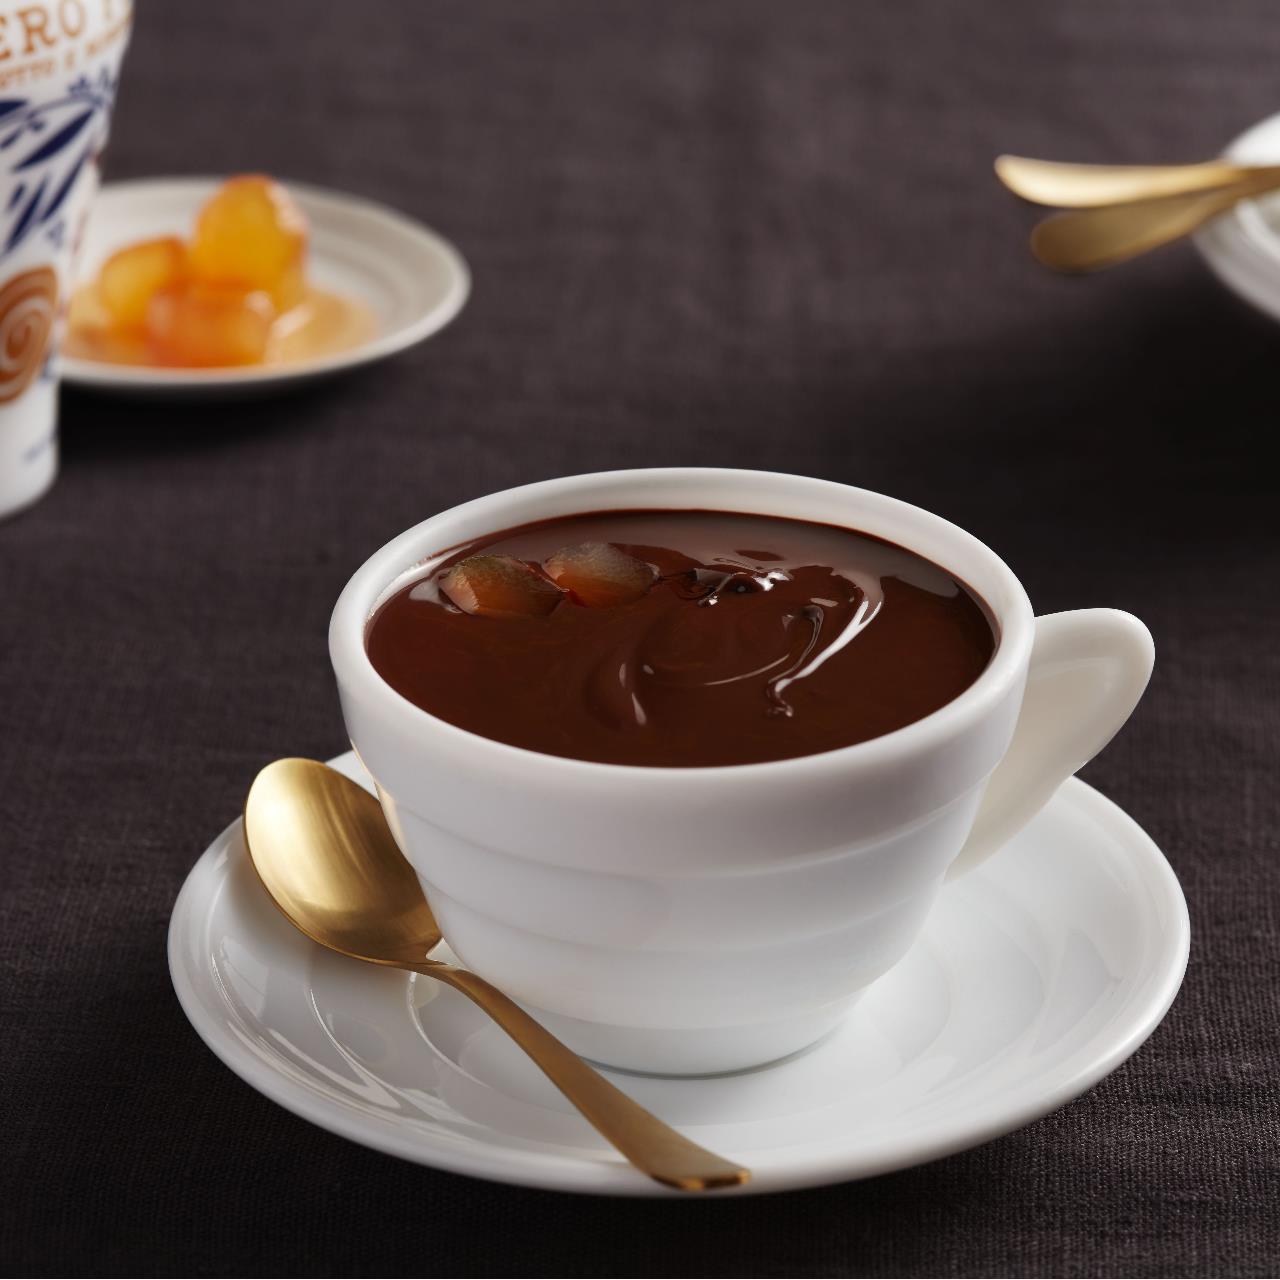 Hot chocolate with Zenzero Fabbri